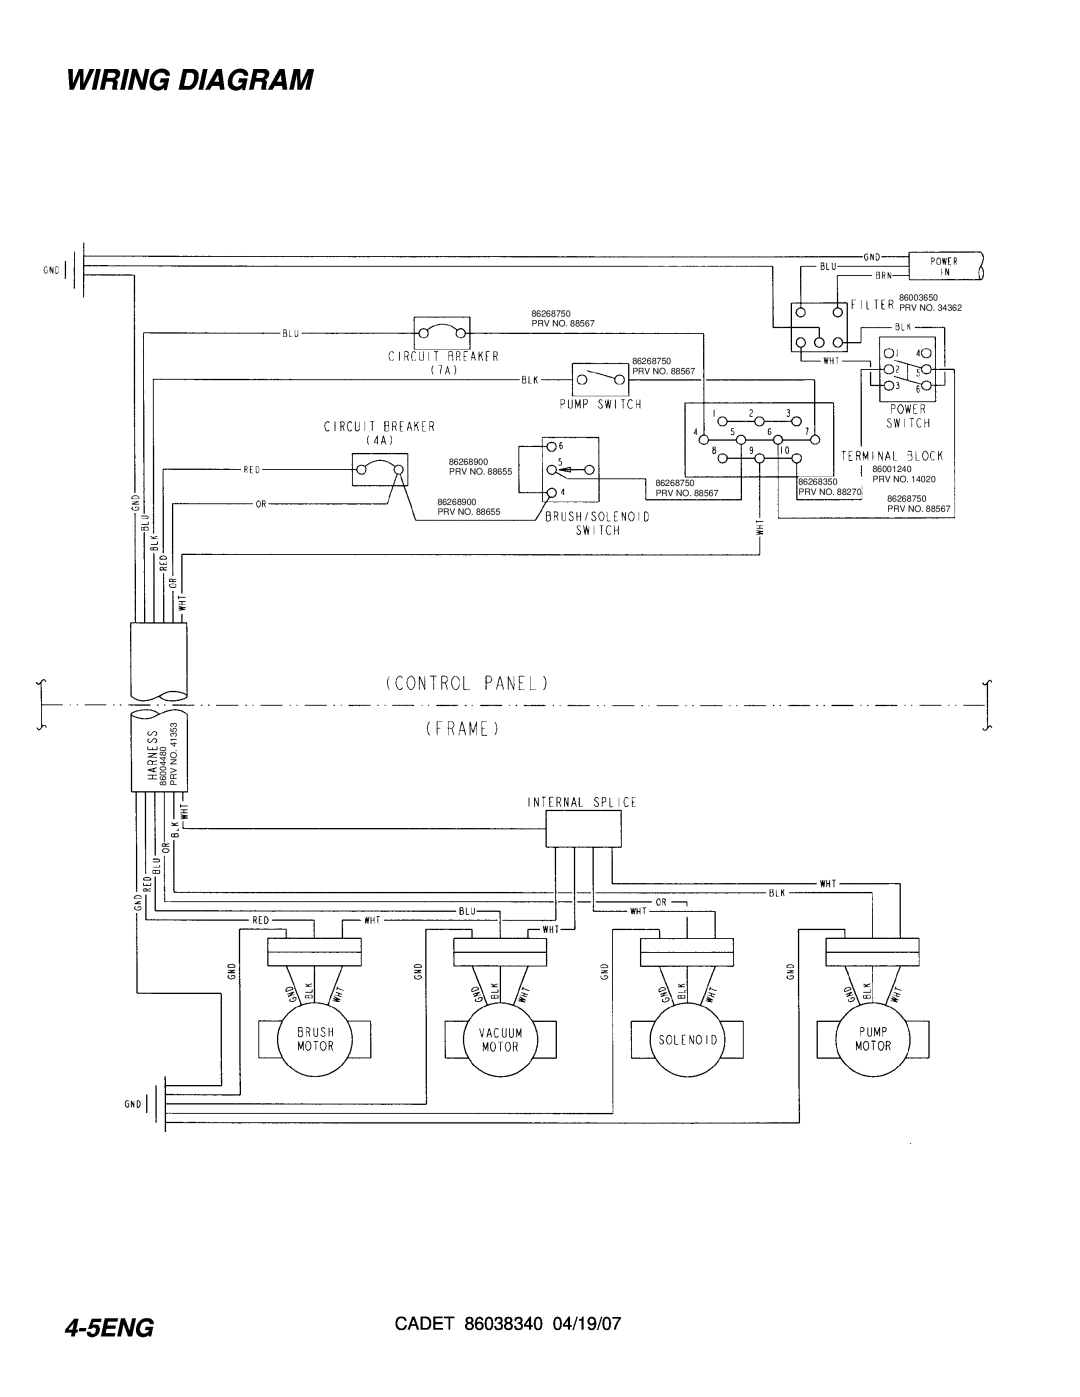 Windsor CDT7IS/10080080, CDT7IE/10080070, CDT7IB/10080060, CDT7IA/10080050 manual Wiring Diagram, 4-5ENG 